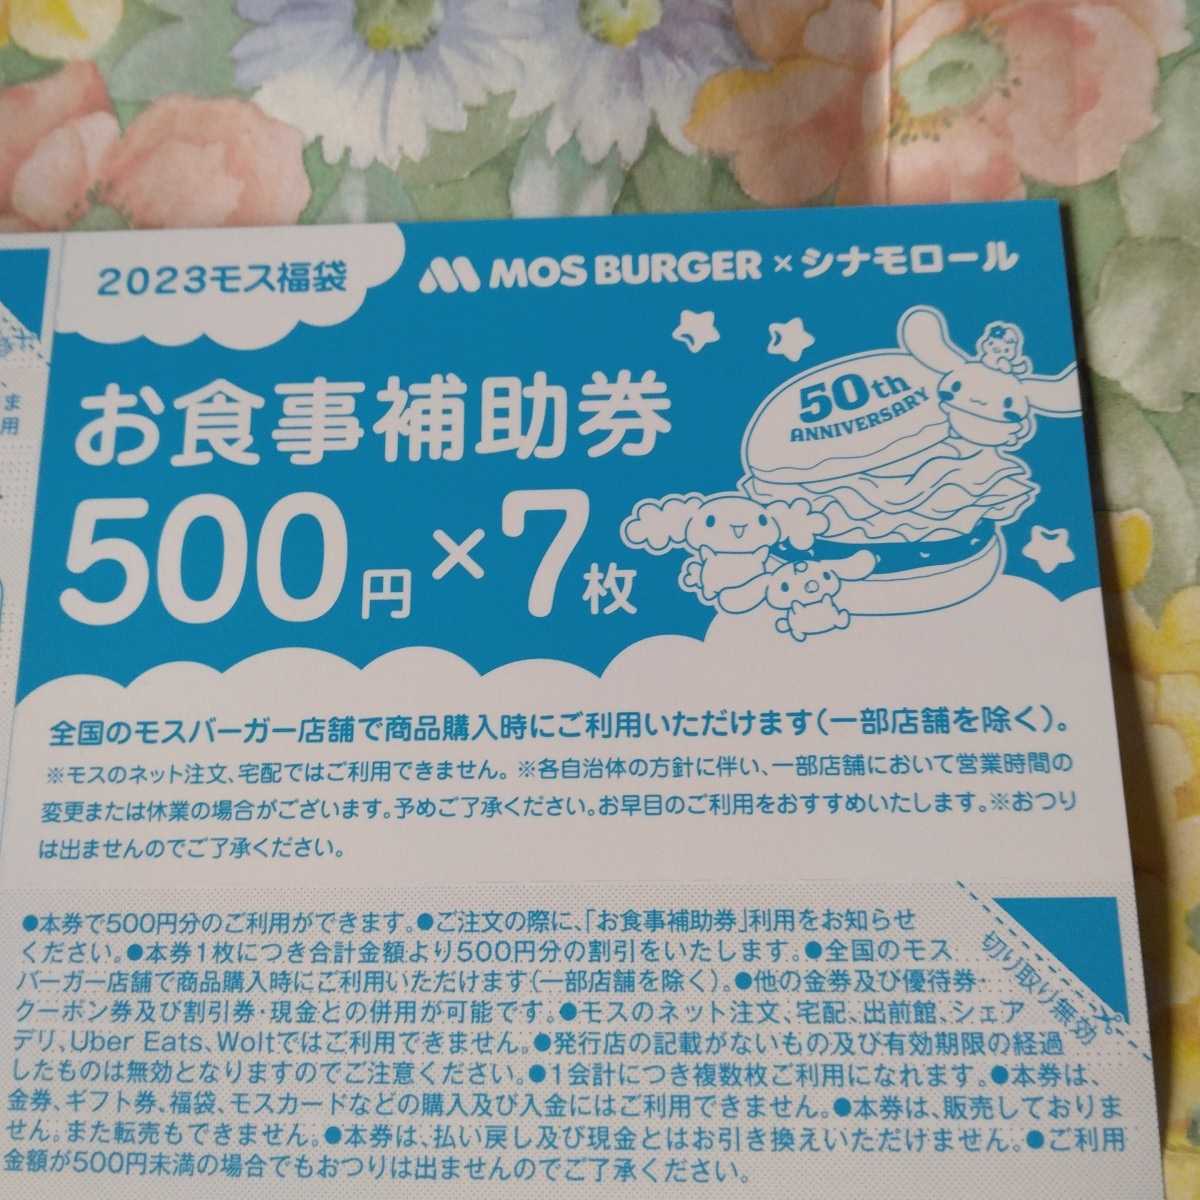 新品本物 モスバーガー お食事補助券 3500円分 全国利用可 期限2023年3月31日